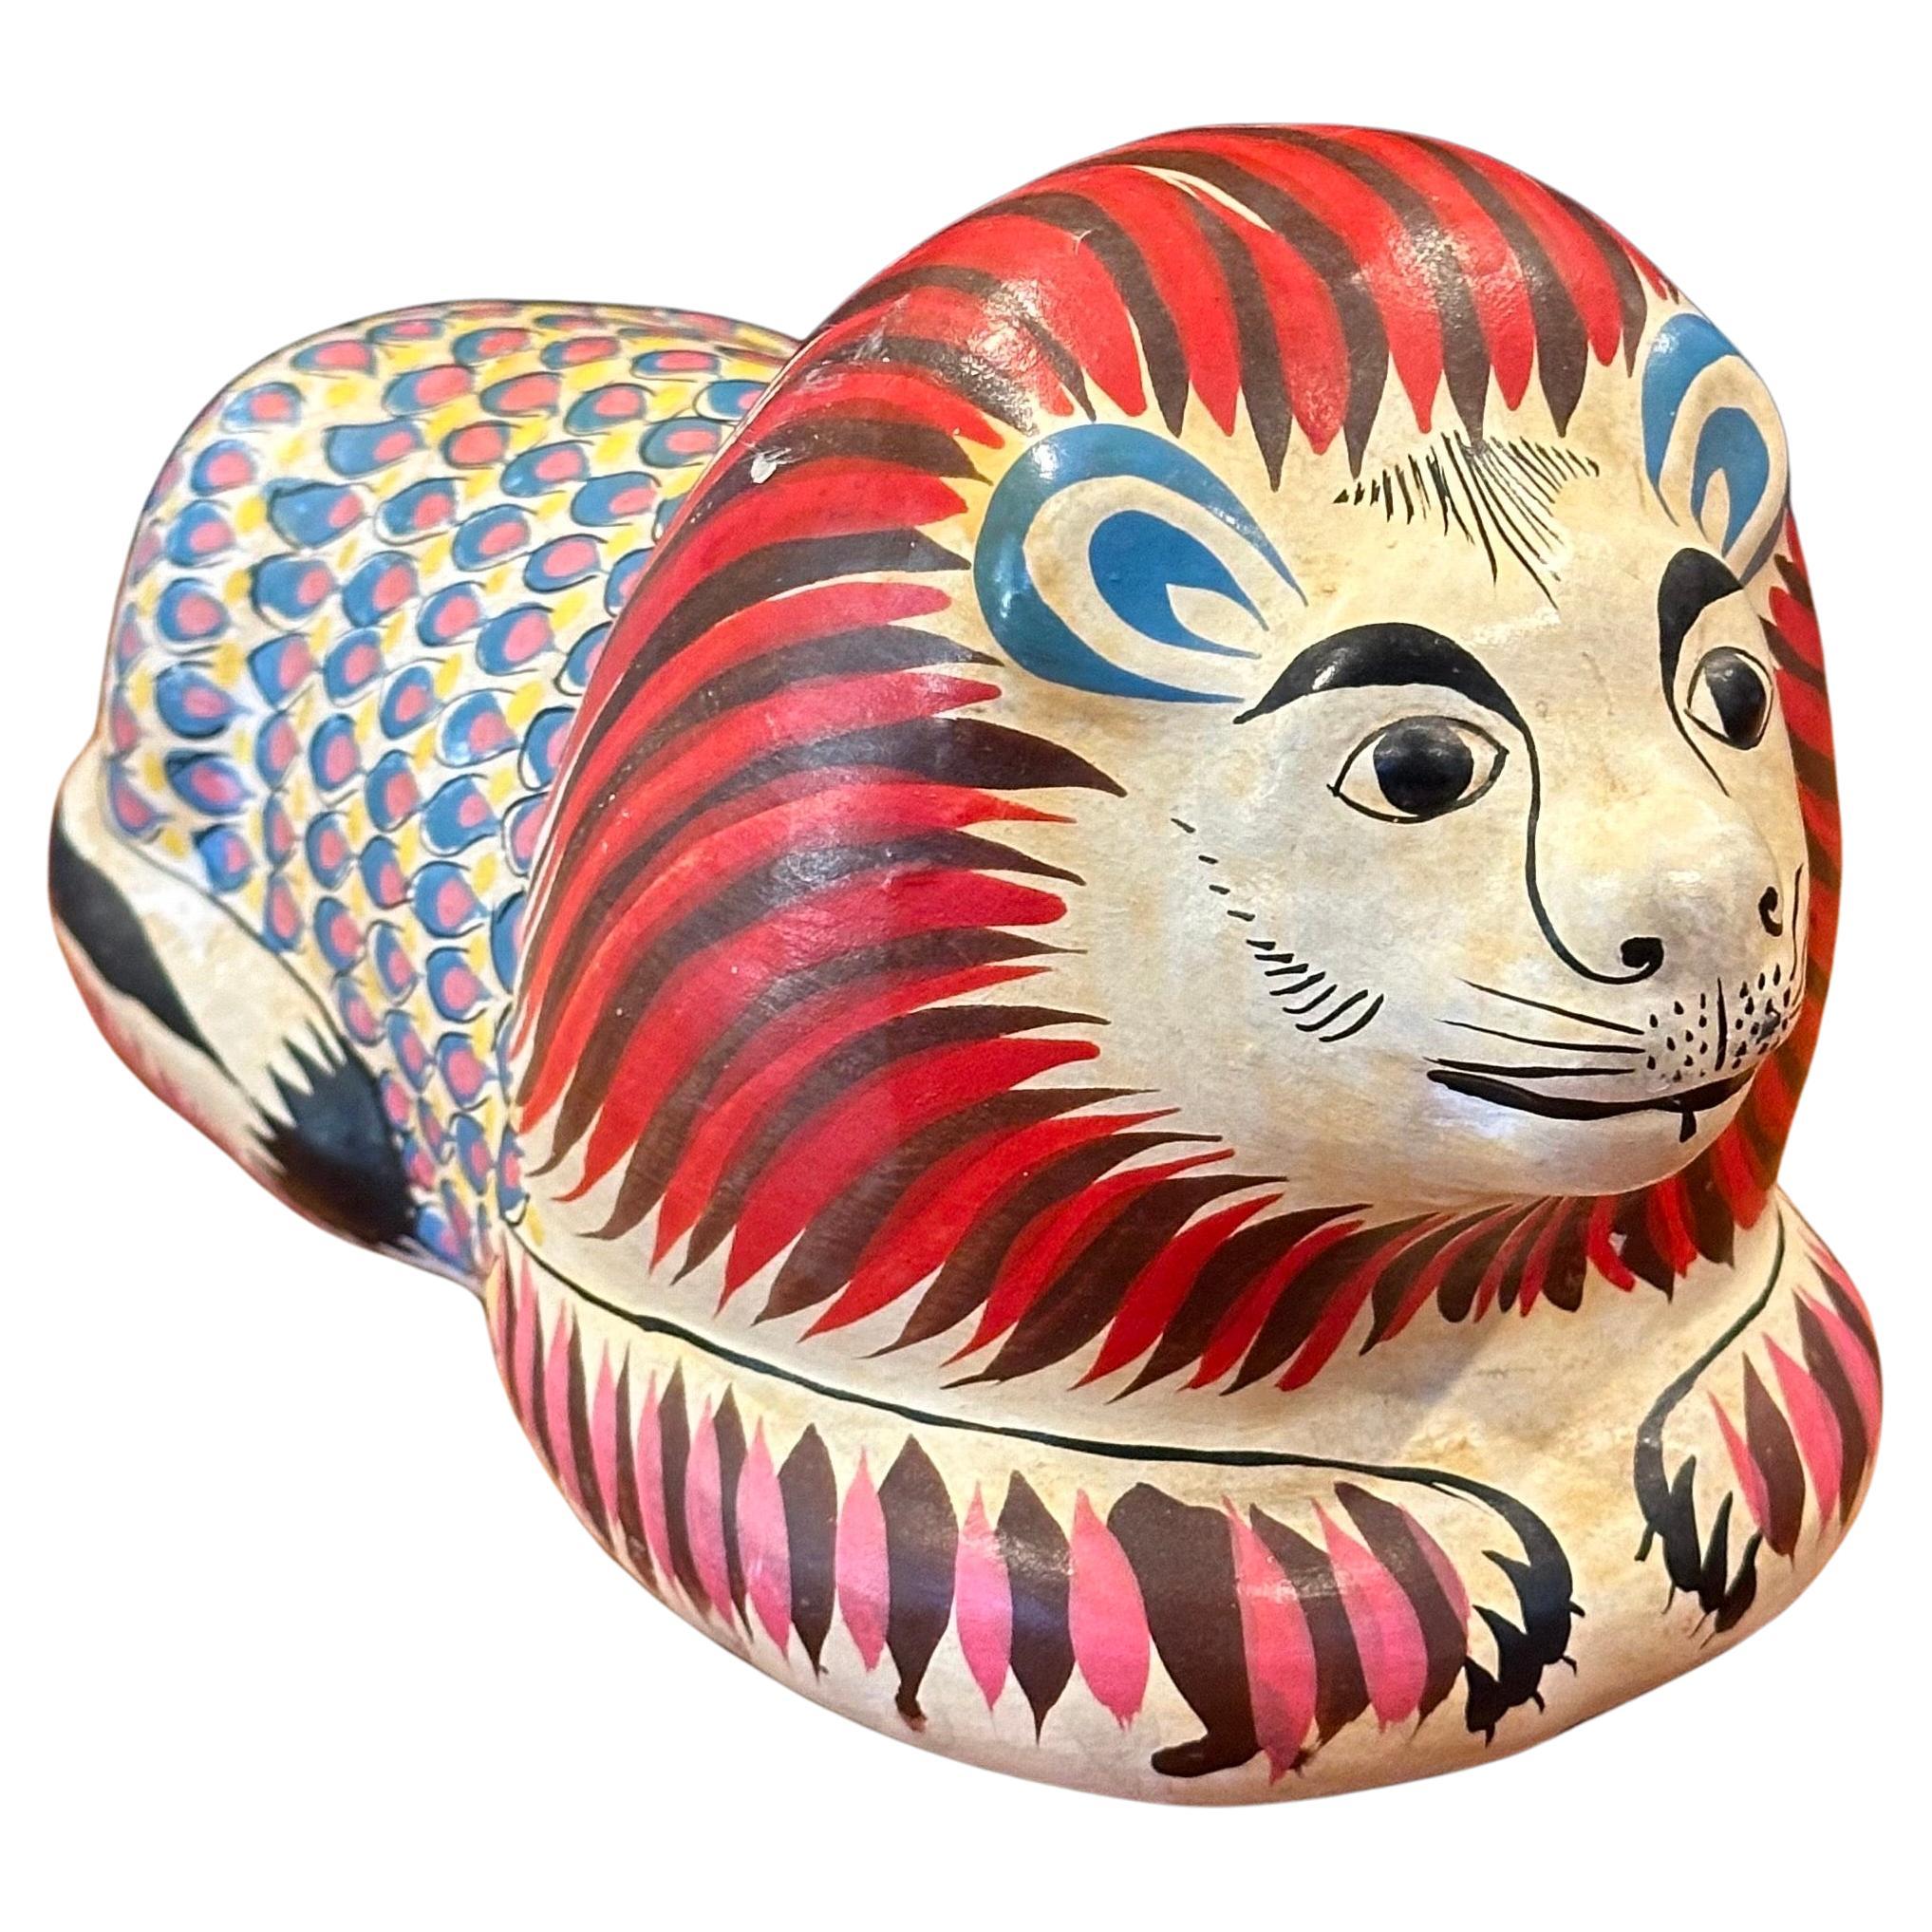 Skurrile handbemalte Löwen-Skulptur aus Keramik im Stil von Sergio Bustamante